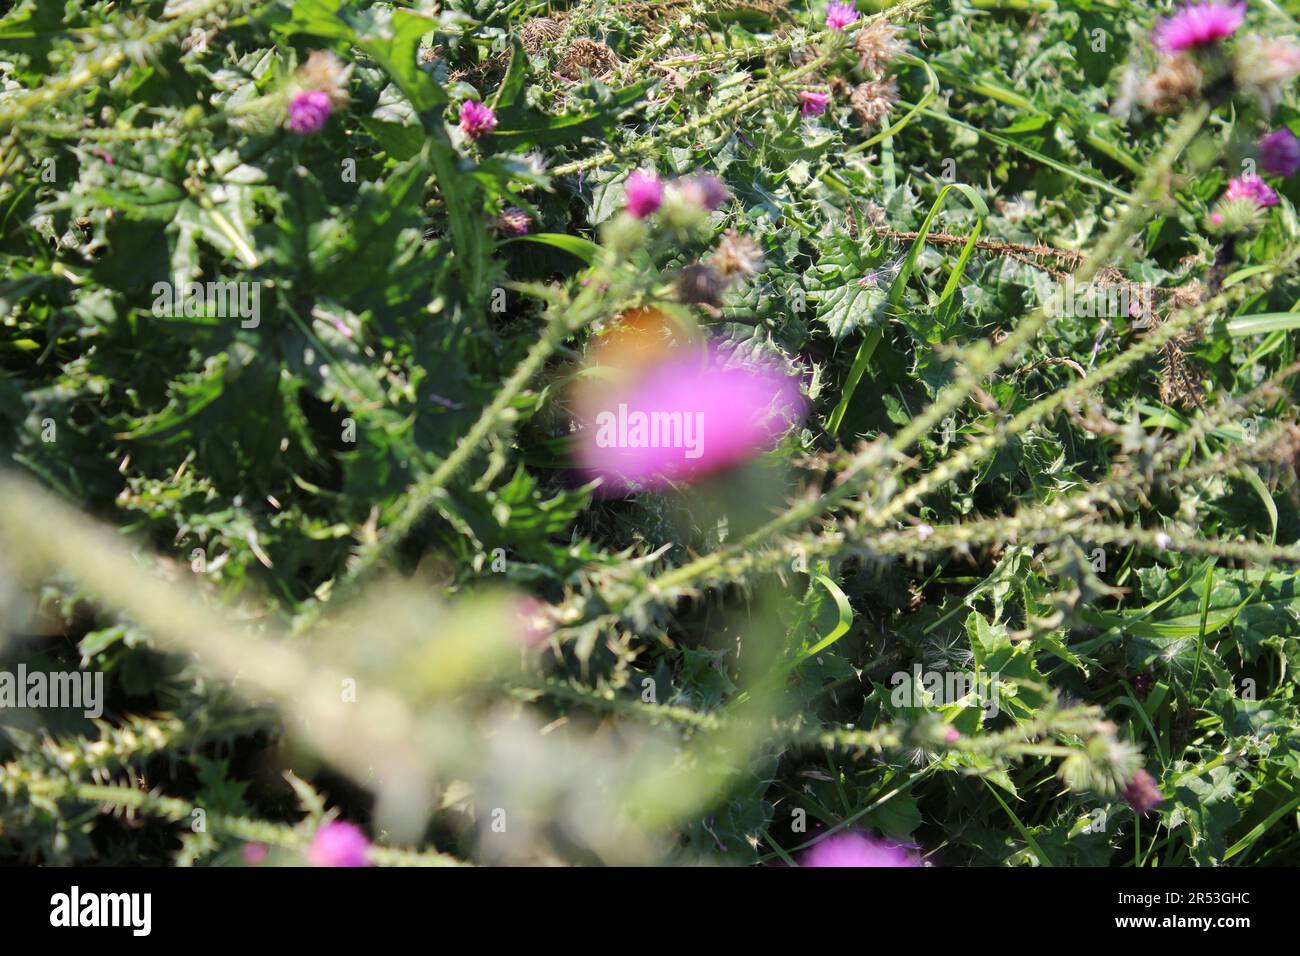 Macrophotographie de fleurs sauvages violettes. Scène de prairie en été. Image de la flore à la lumière du jour. Arrière-plan flou. Tête de fleur moelleuse. Temps venteux. Banque D'Images